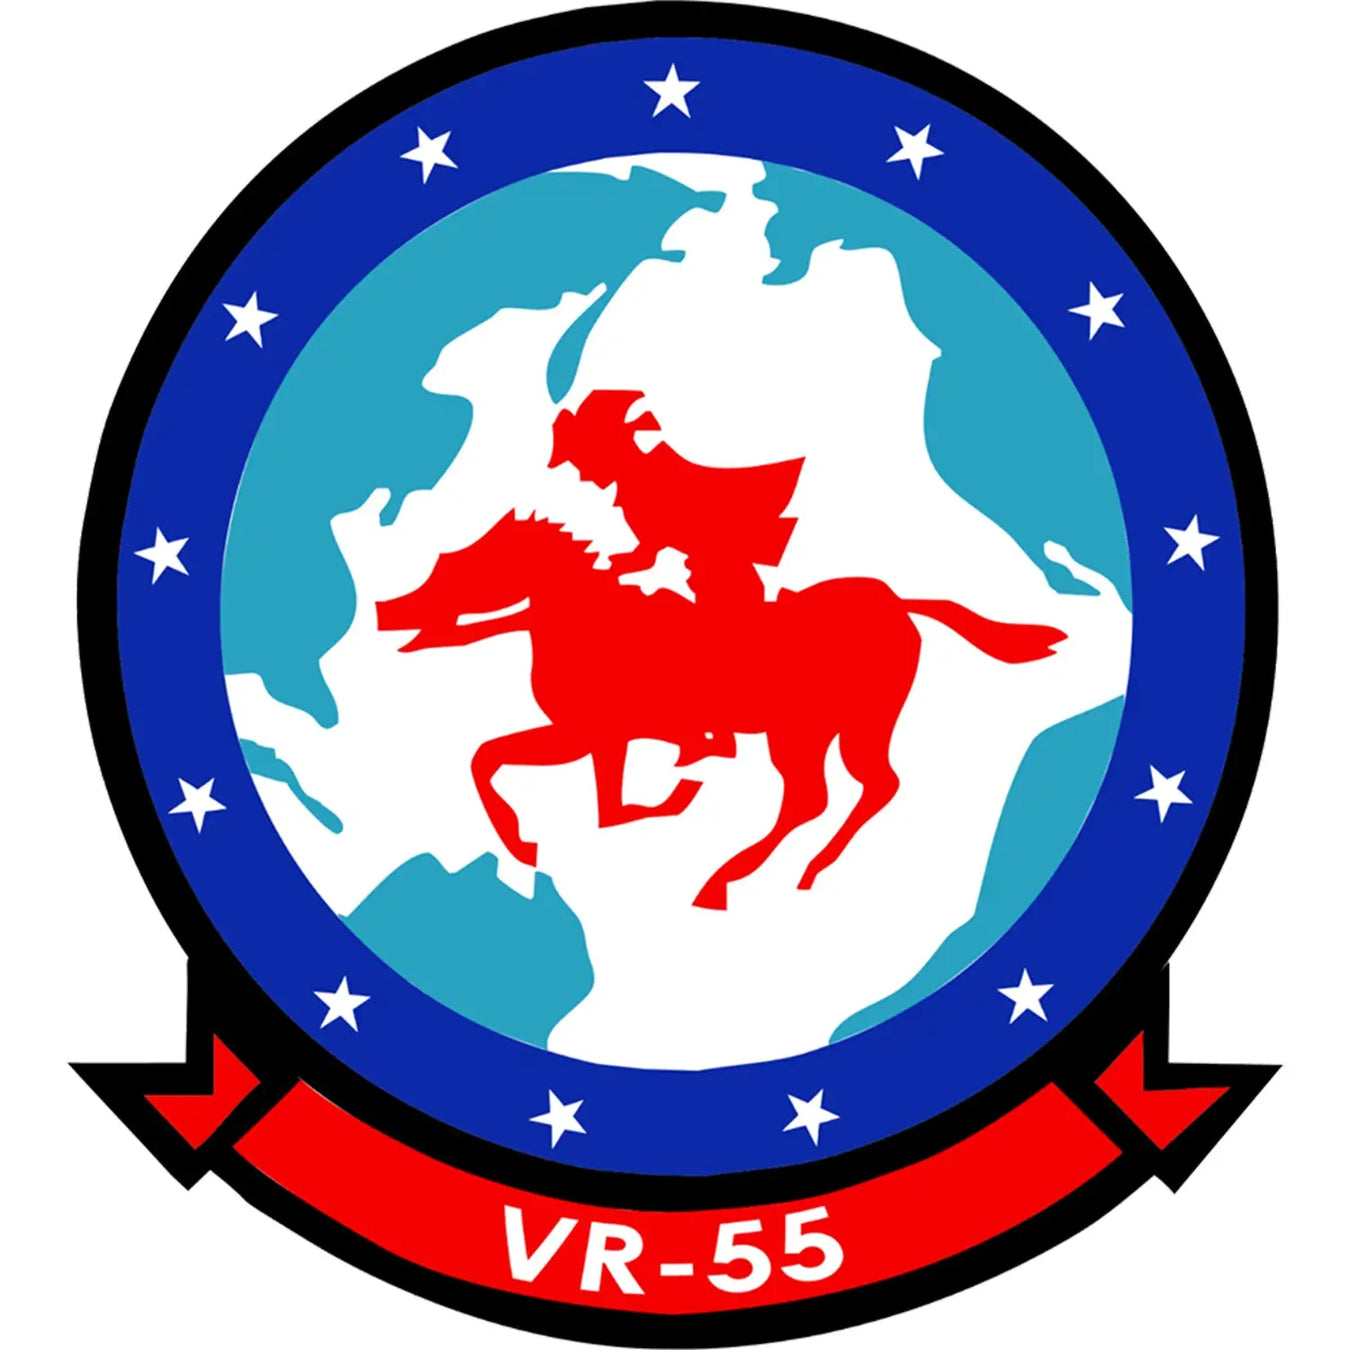 Fleet Logistics Support Squadron 55 (VR-55) Logo Decal Emblem Crest Insignia